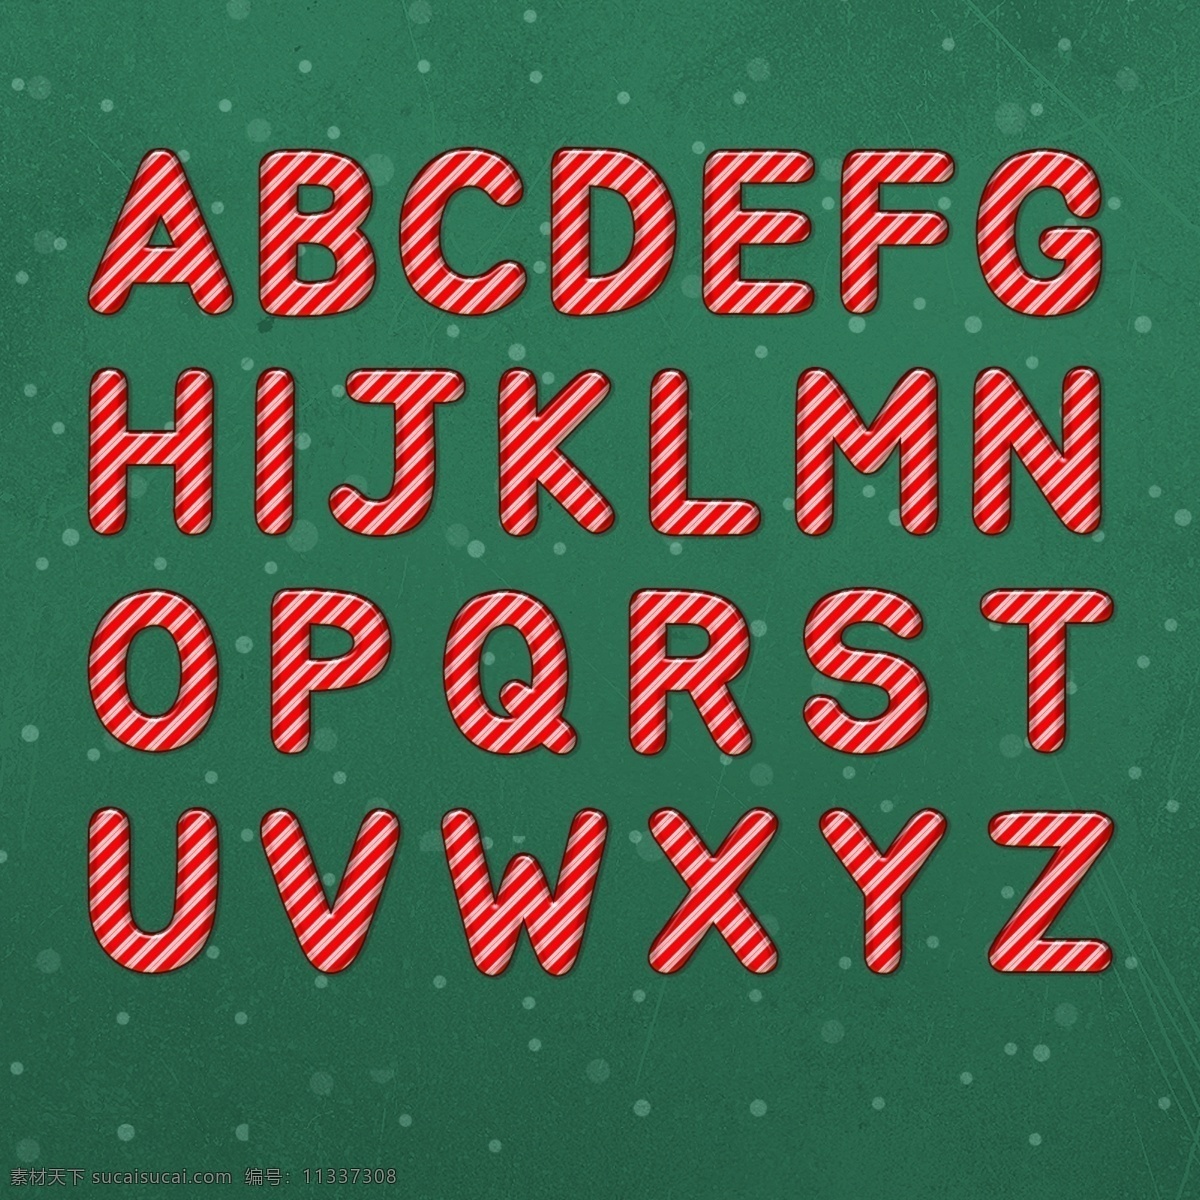 圣诞 糖果 风格 艺术 字母 集合 圣诞糖果 字母集 书面文字 渐变字体 糖果字体 糖果微风 红色